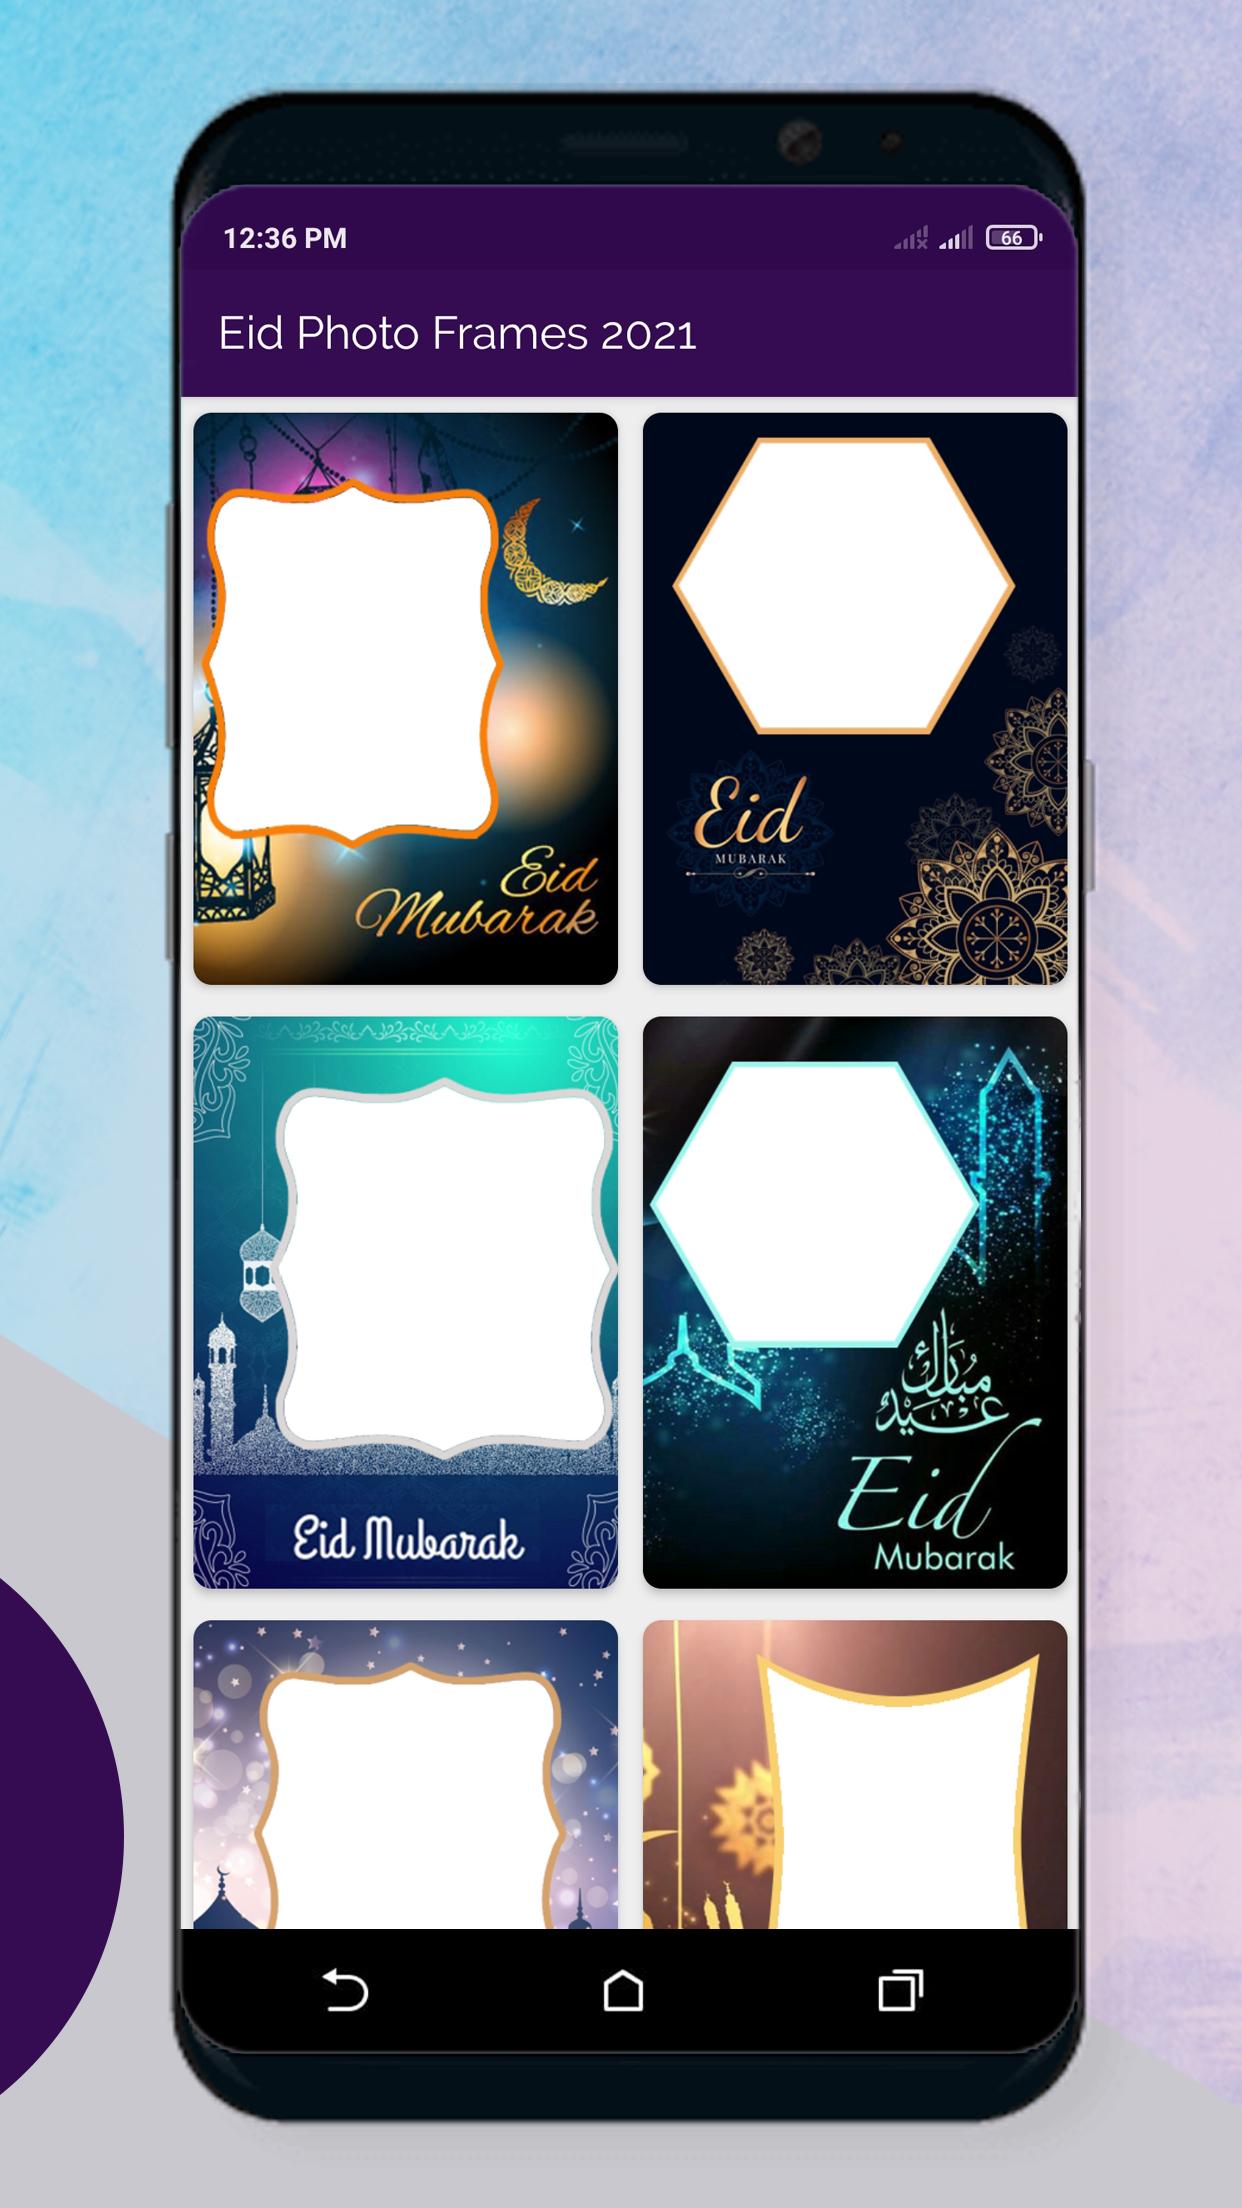 Eid Mubarak Photo Frames 2021 3.0 Screenshot 2